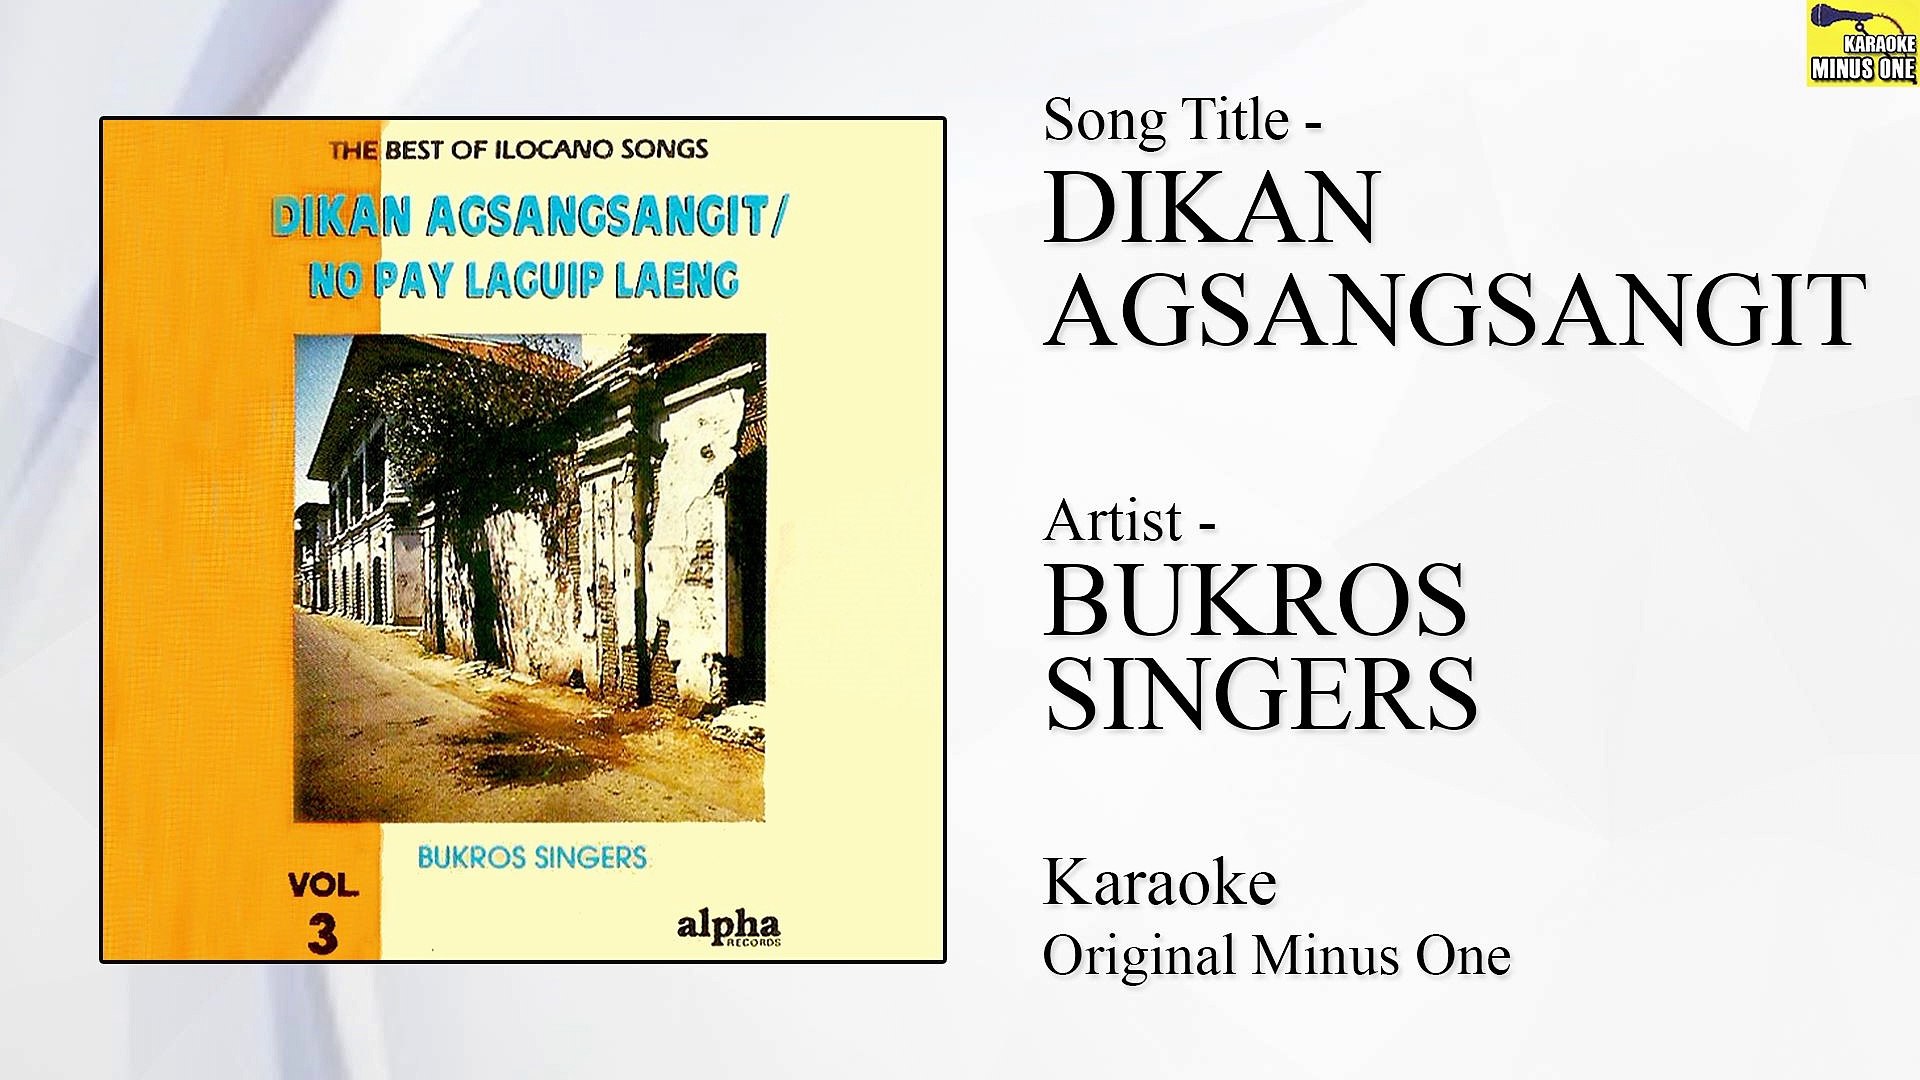 Bukros Singers - Dikan Agsangsangit (Original Minus One)